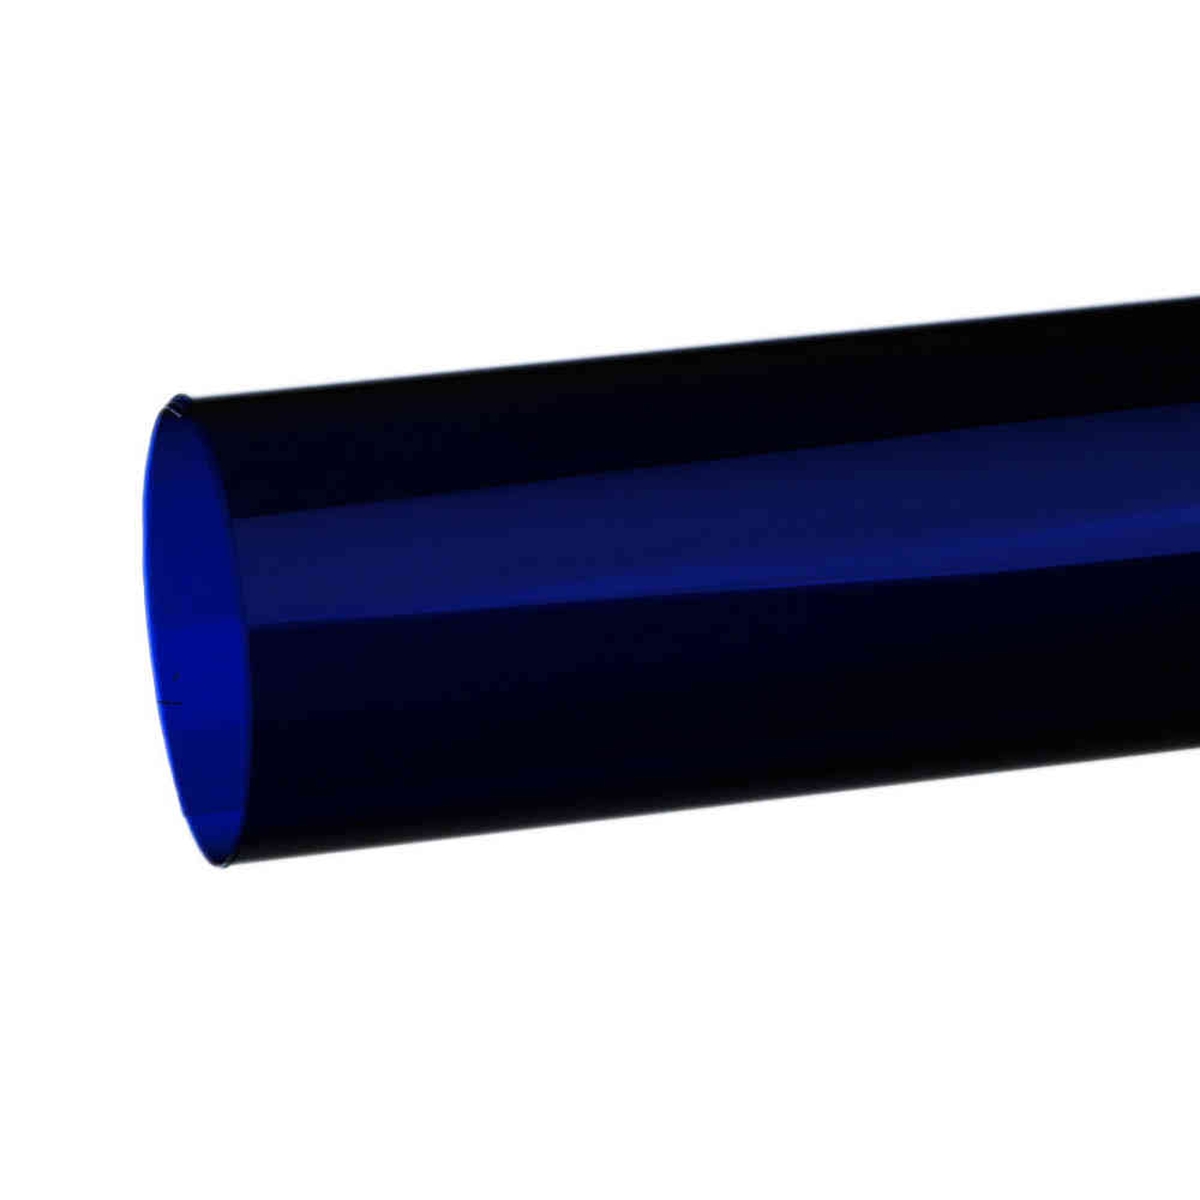 Hedler MaxiSoft Filterfolie blau 120 x 100 cm - Farbeffektfilter